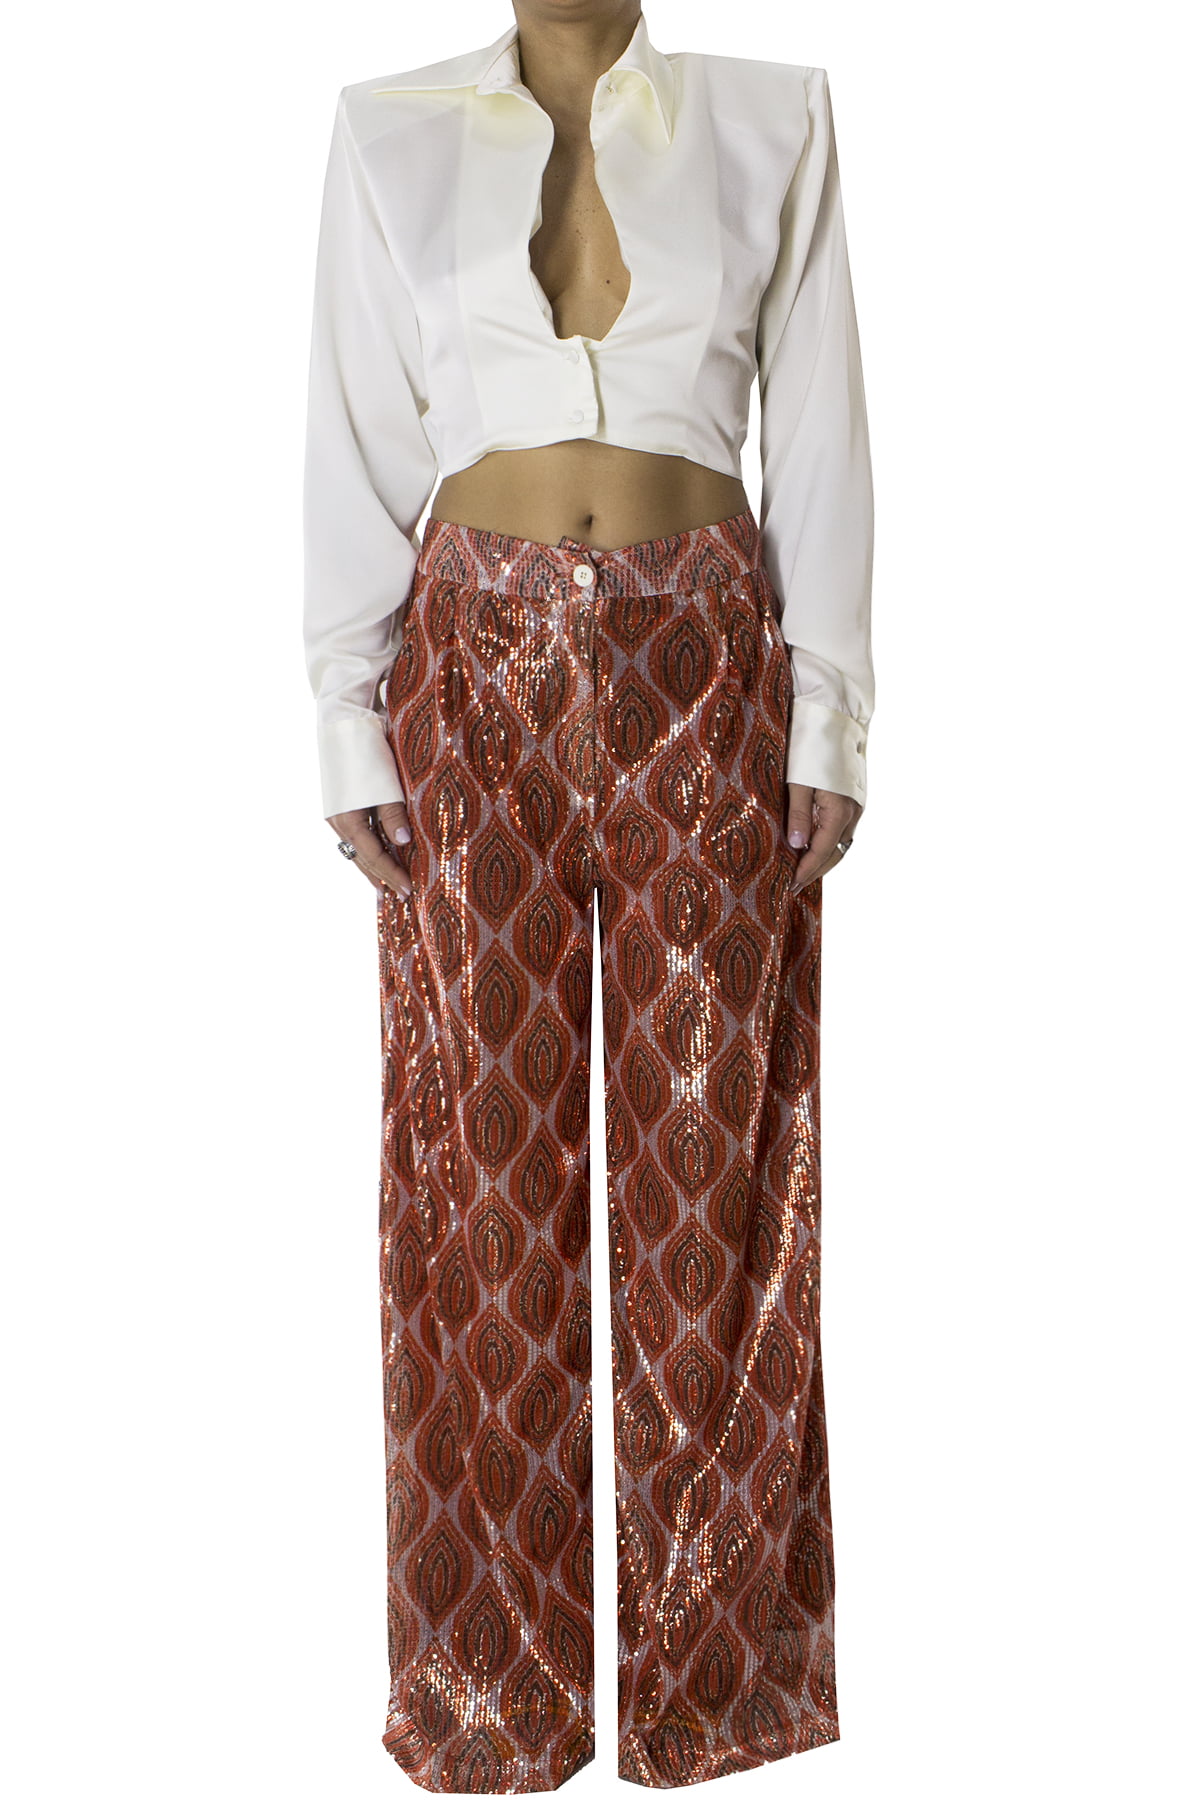 Pantalone donna a pazlazzo con micropailettes multicolor vita alta chiusura bottone